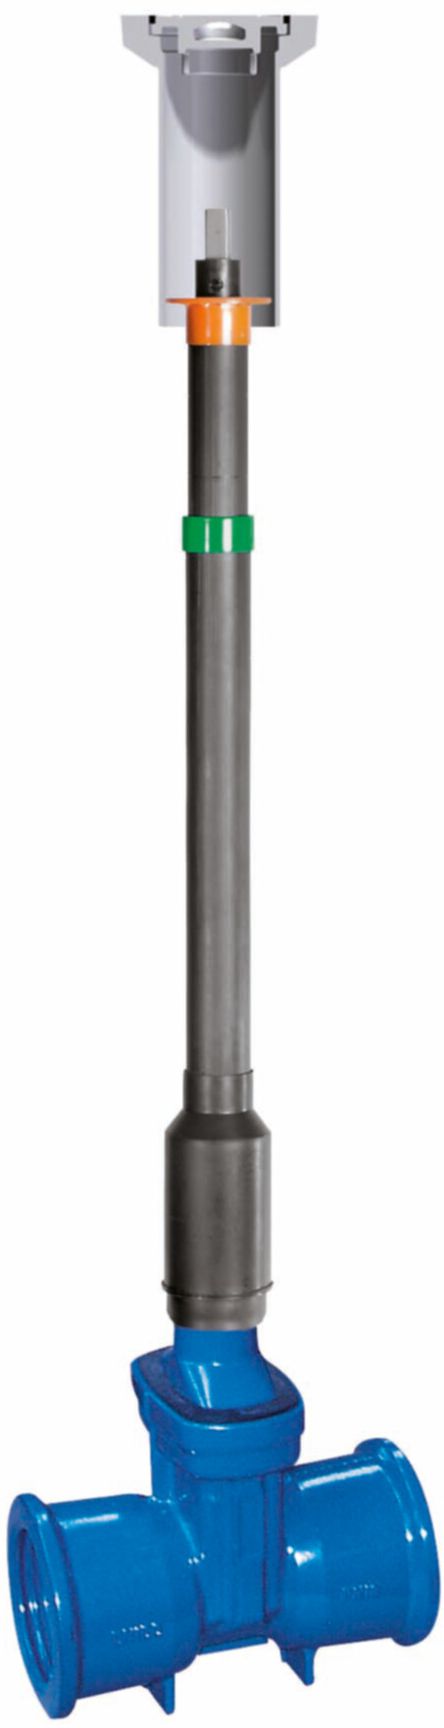 Teleskop-Einbaugarnitur Fig. 6895 L0 DN 80 GT 0.88 - 1.01m - Von Roll Armaturen